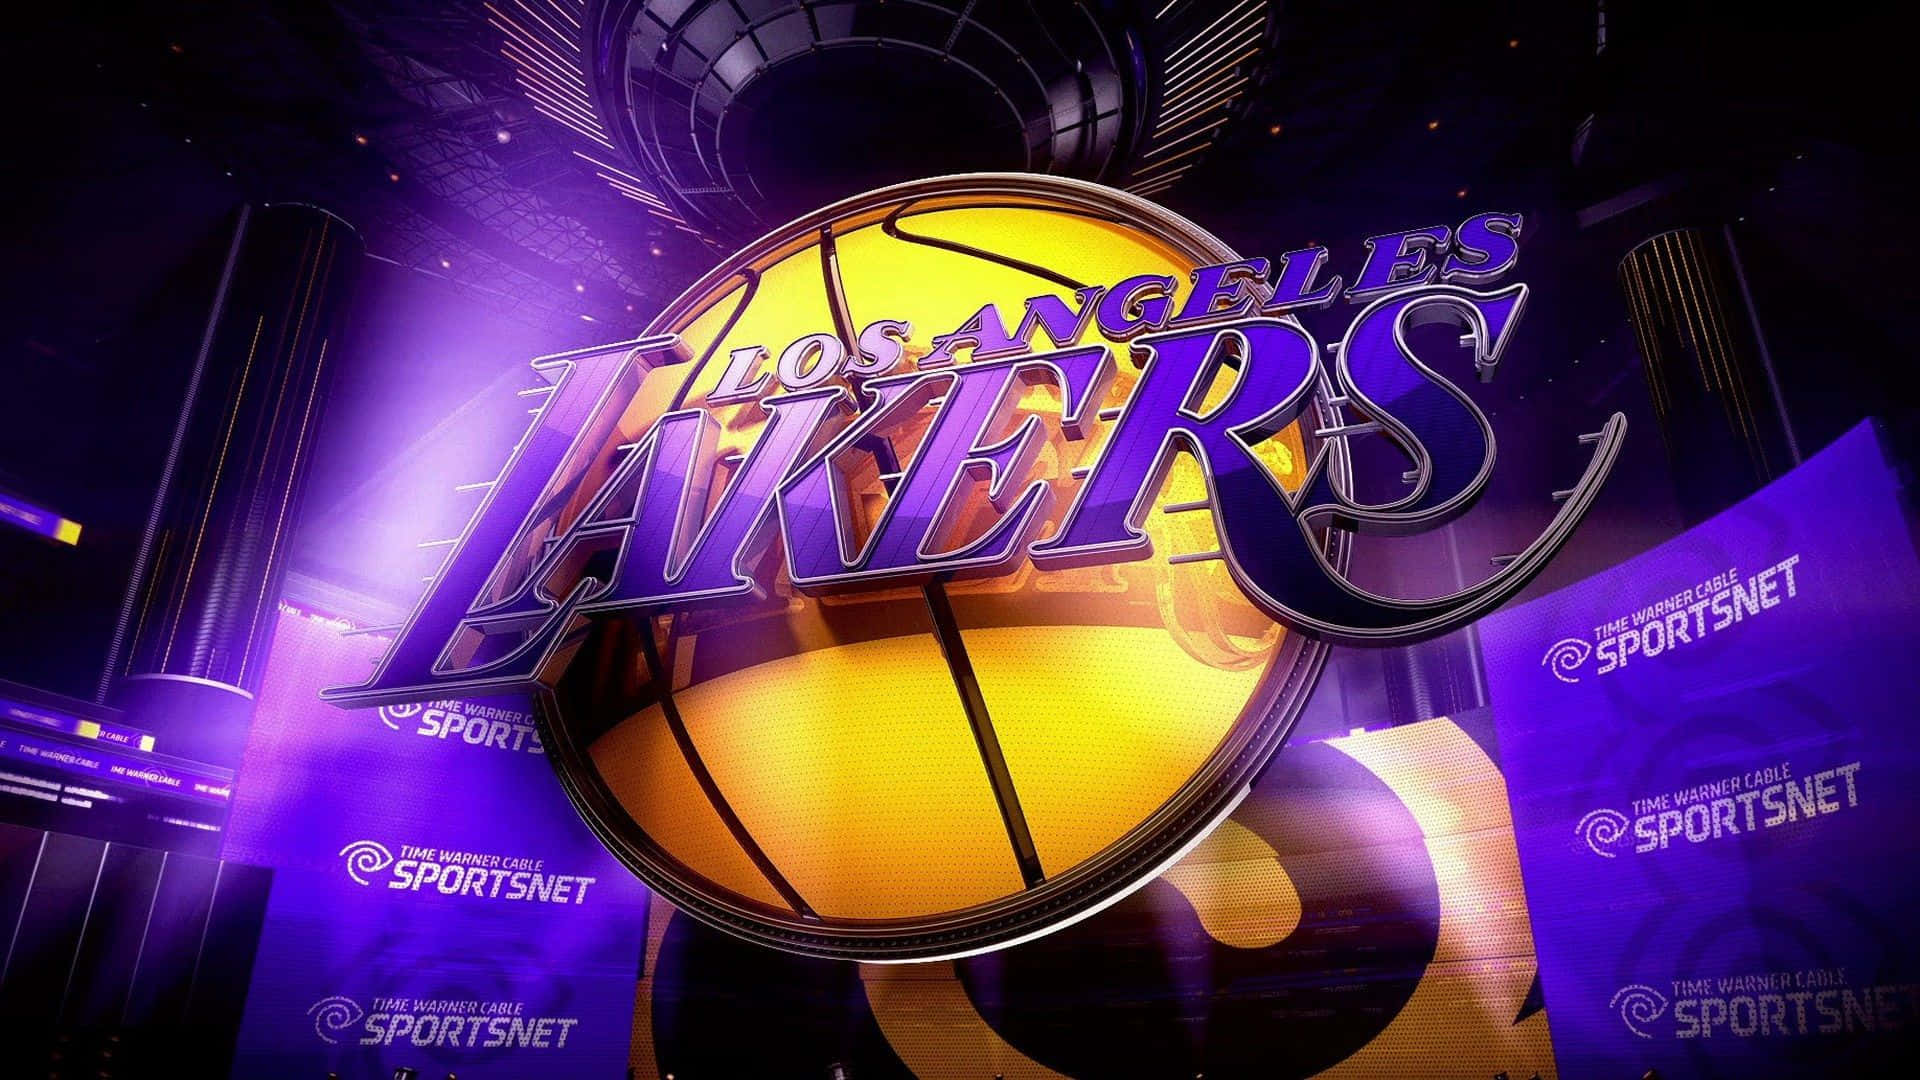 Sostienii Los Angeles Lakers Nel Loro Cammino Verso La Grandezza